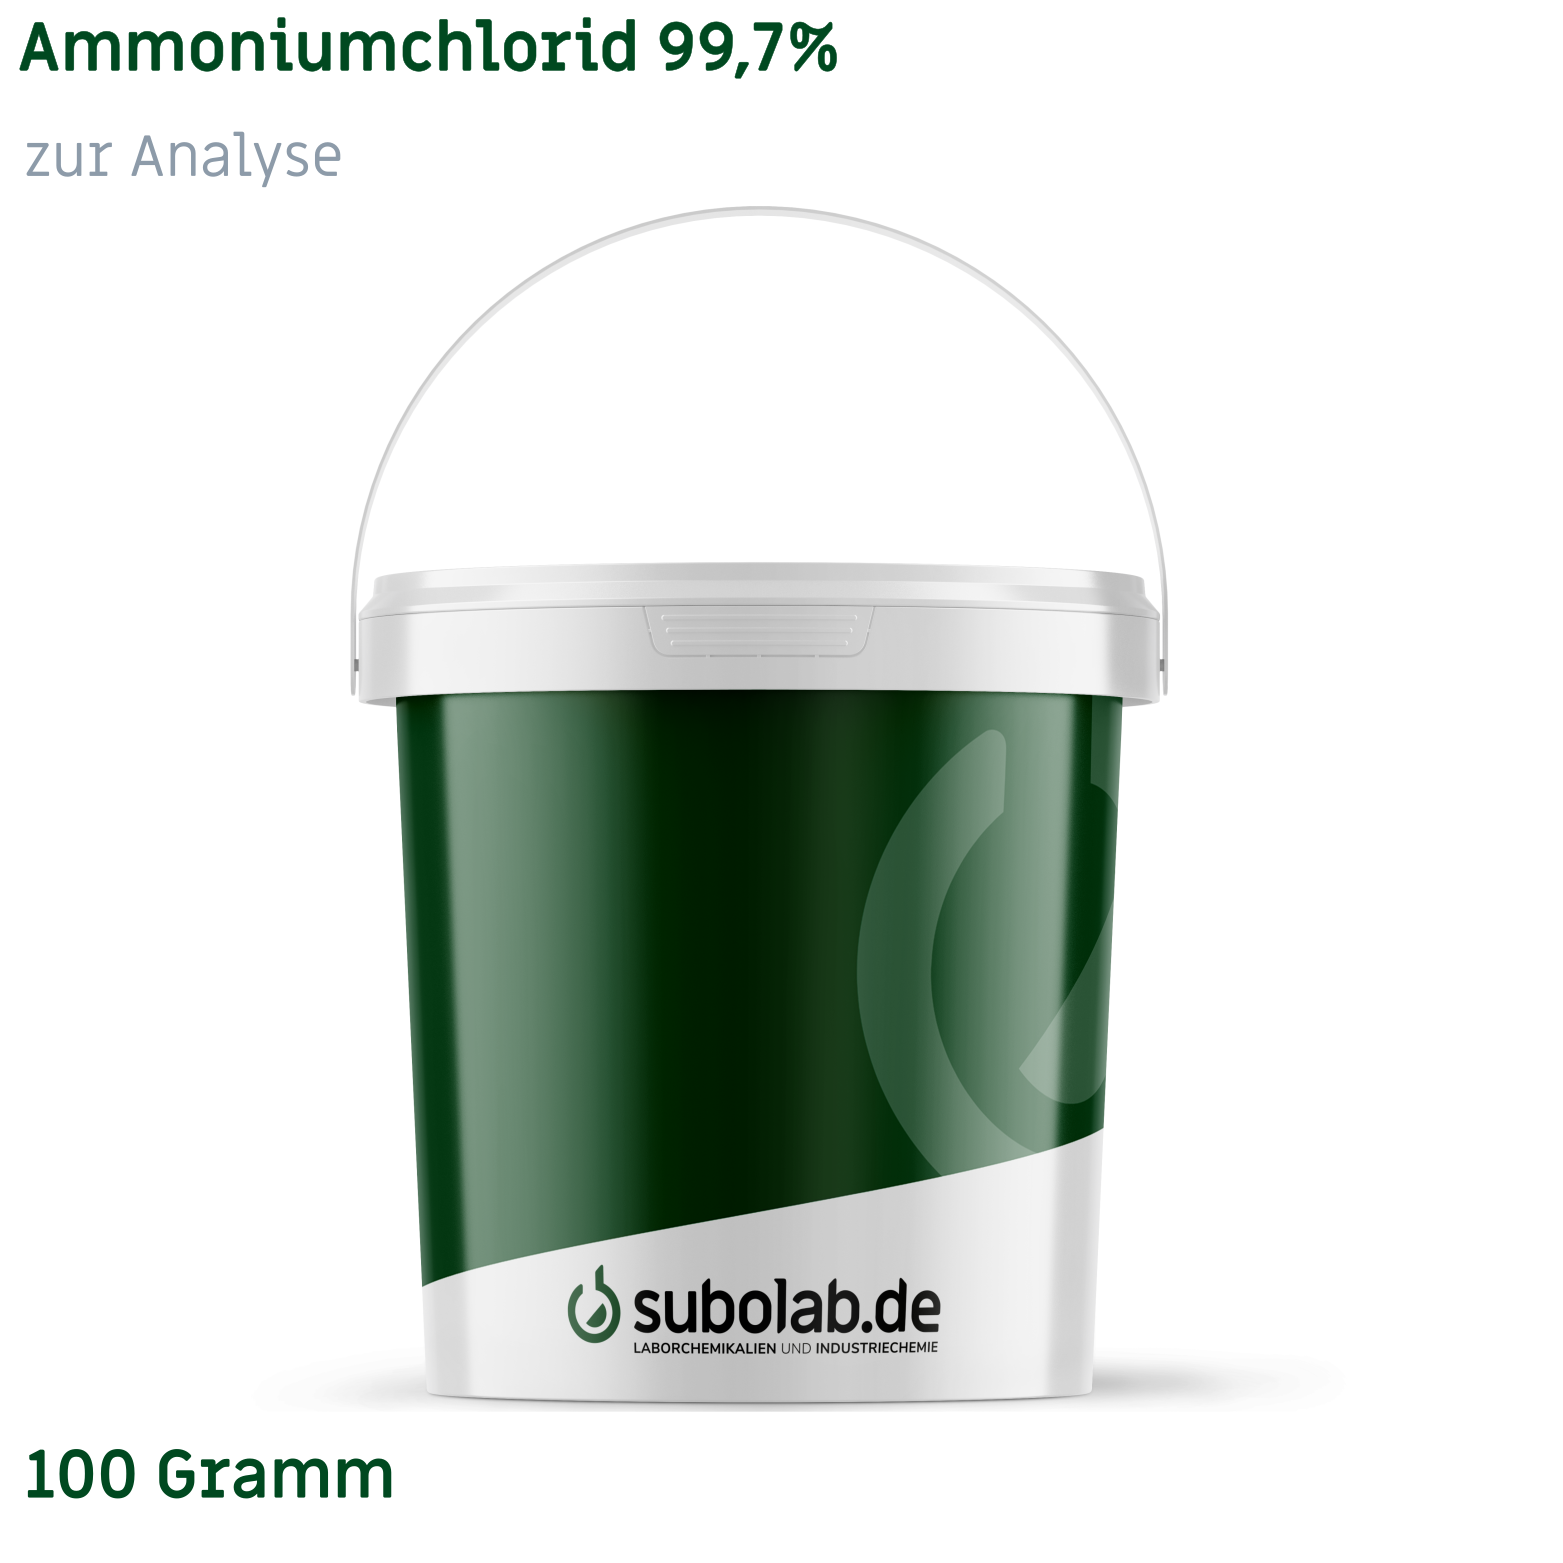 Bild von Ammoniumchlorid 99,7% zur Analyse (100 Gramm)